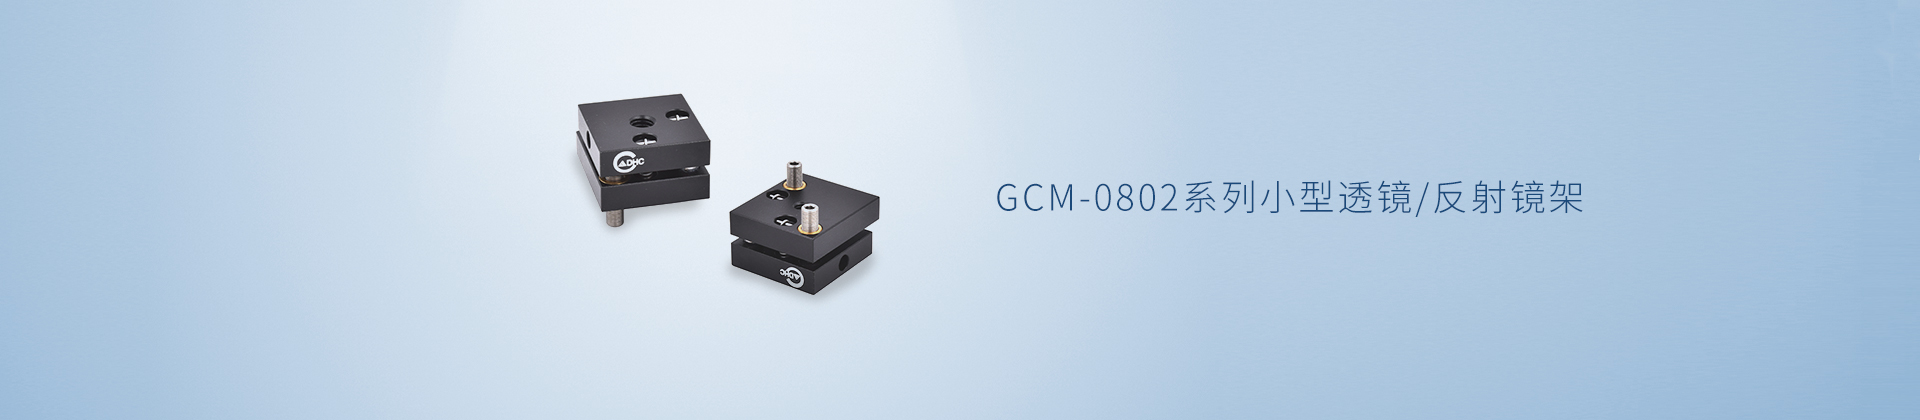 GCM-0802系列小型透镜/反射镜架